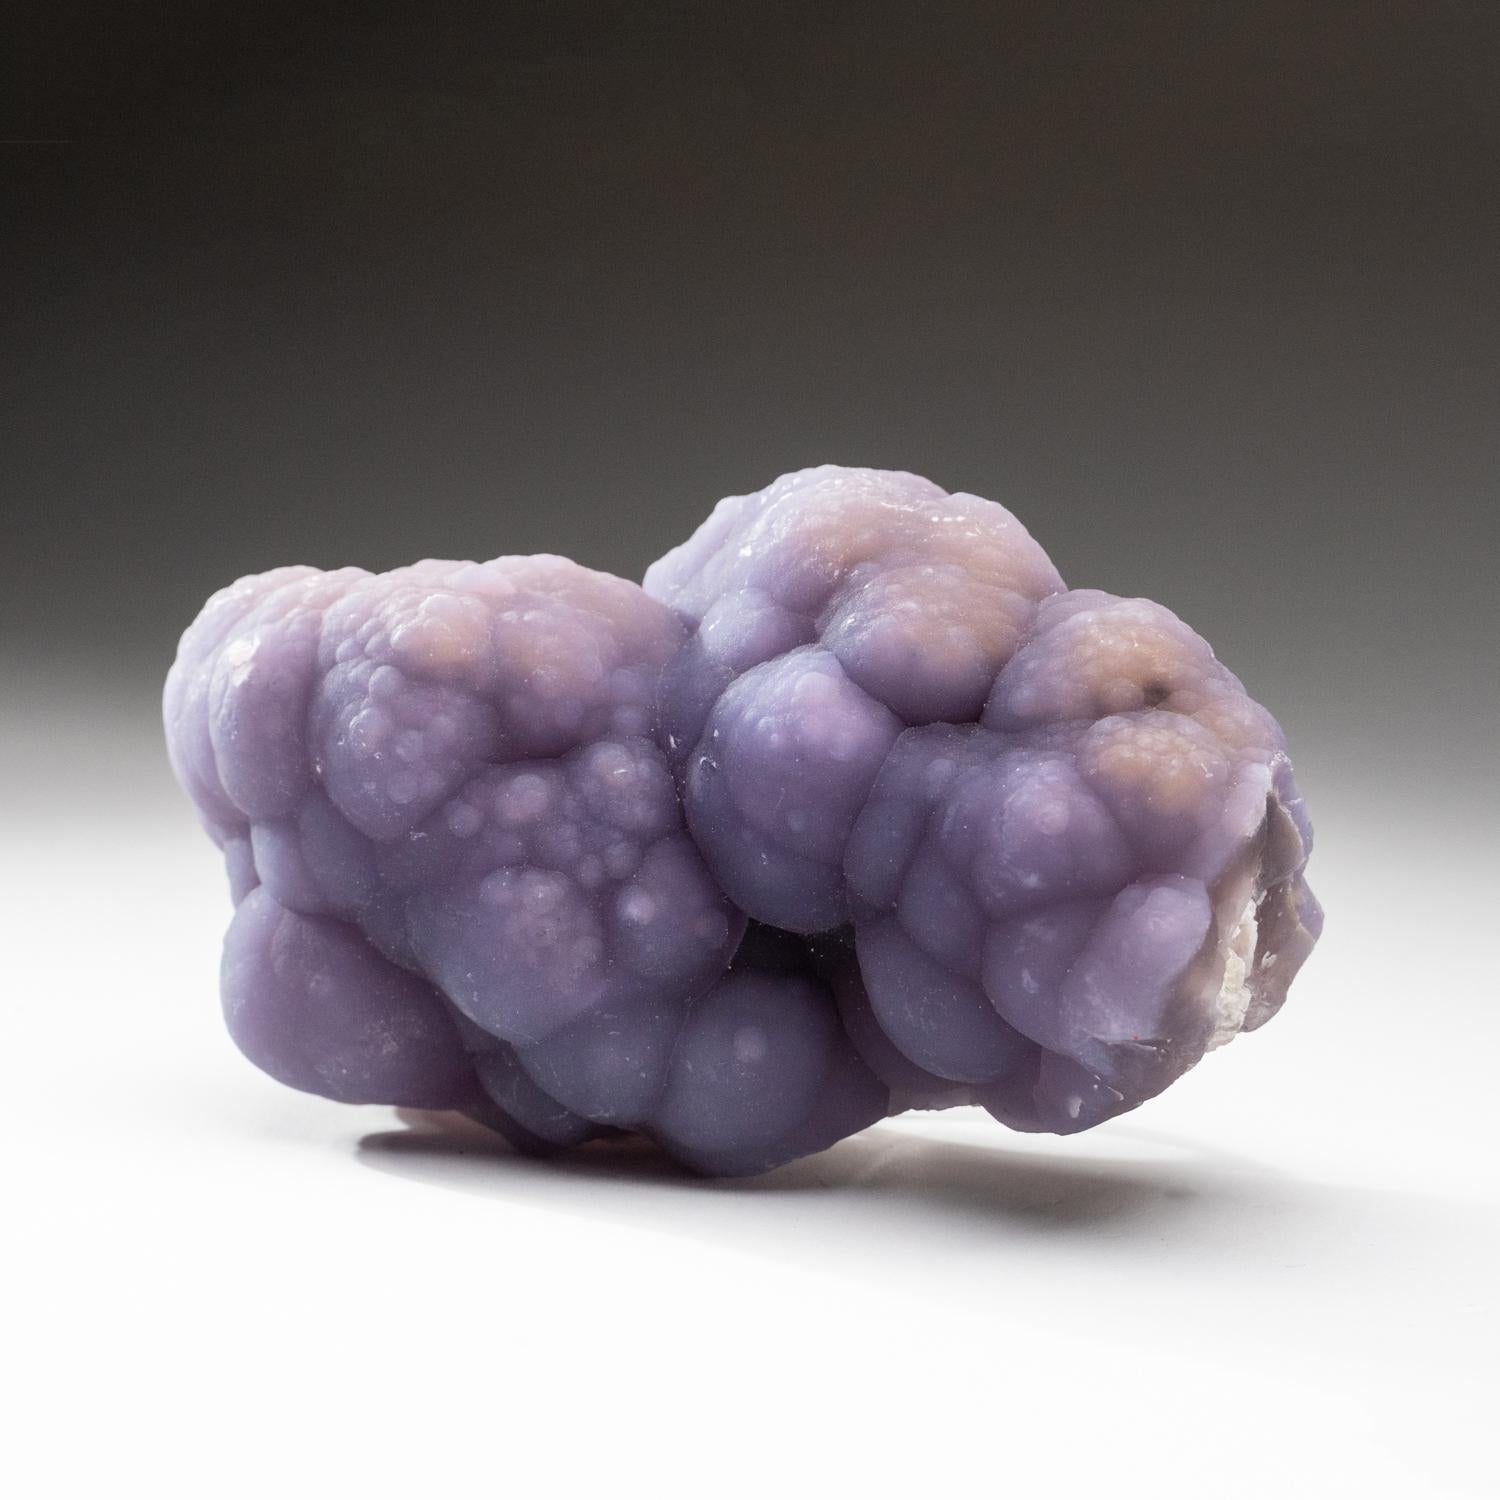 De la mine Minggang, préfecture de Xinyang, Henan, Chine Fluorite translucide violette en formation botryoïdale avec des agrégats hémisphériques sculpturaux couvrant les deux côtés de sa matrice. Ce type de fluorine rare et unique est une pièce